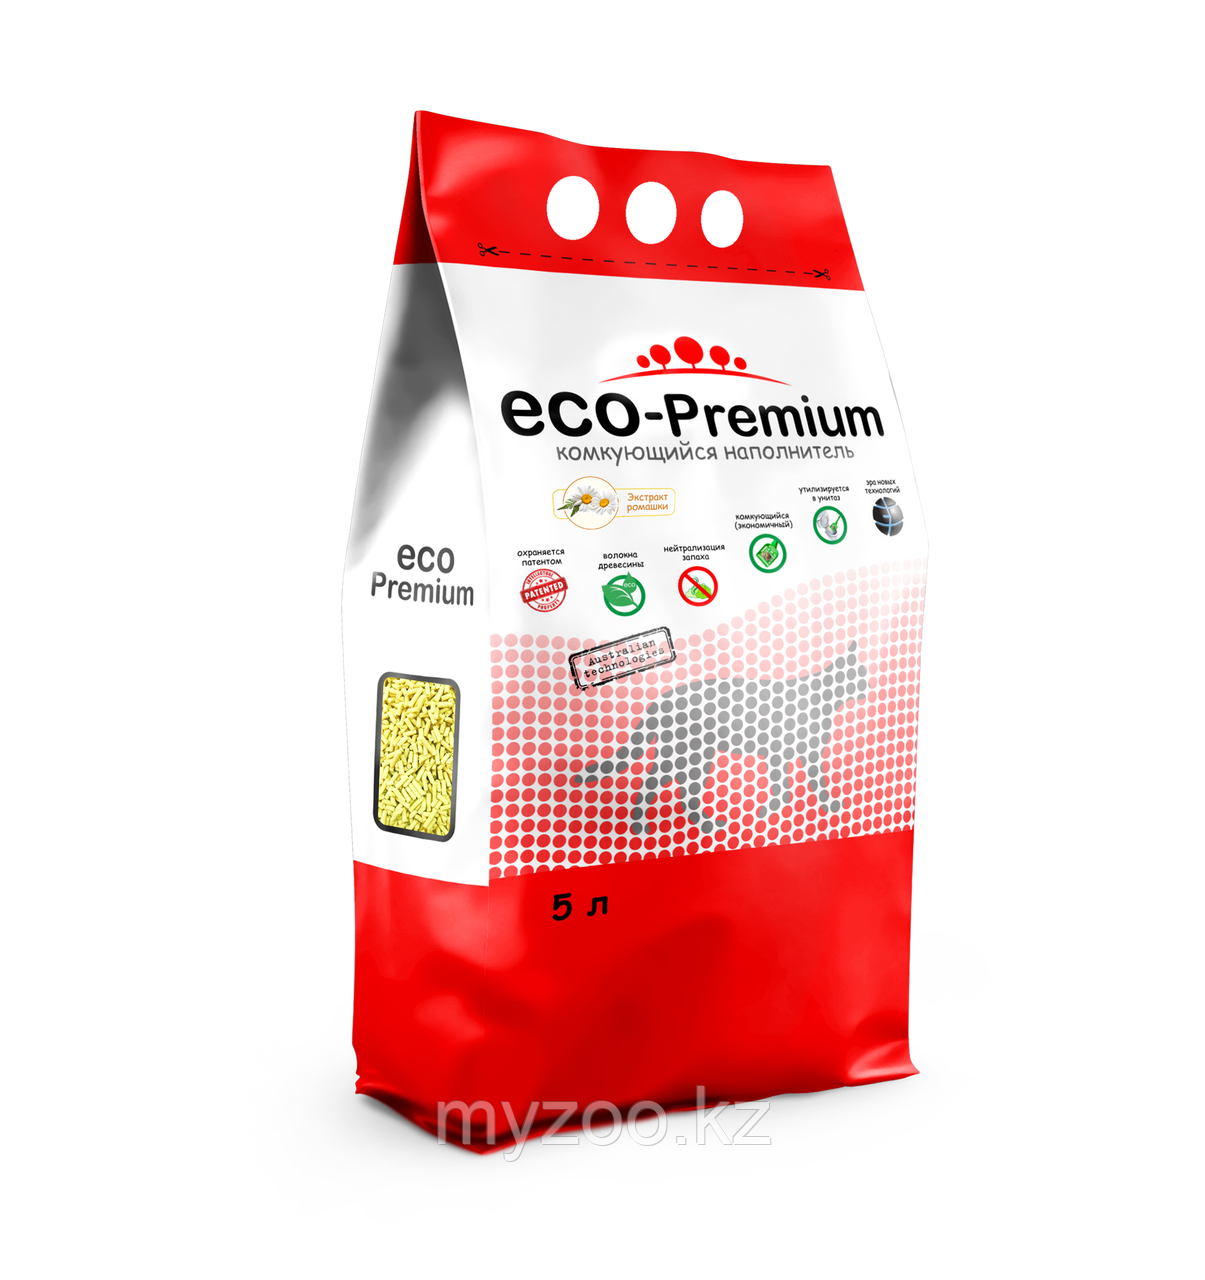 ECO-Premium Ромашка, 5 л |Эко-премиум комкующийся древесный наполнитель|